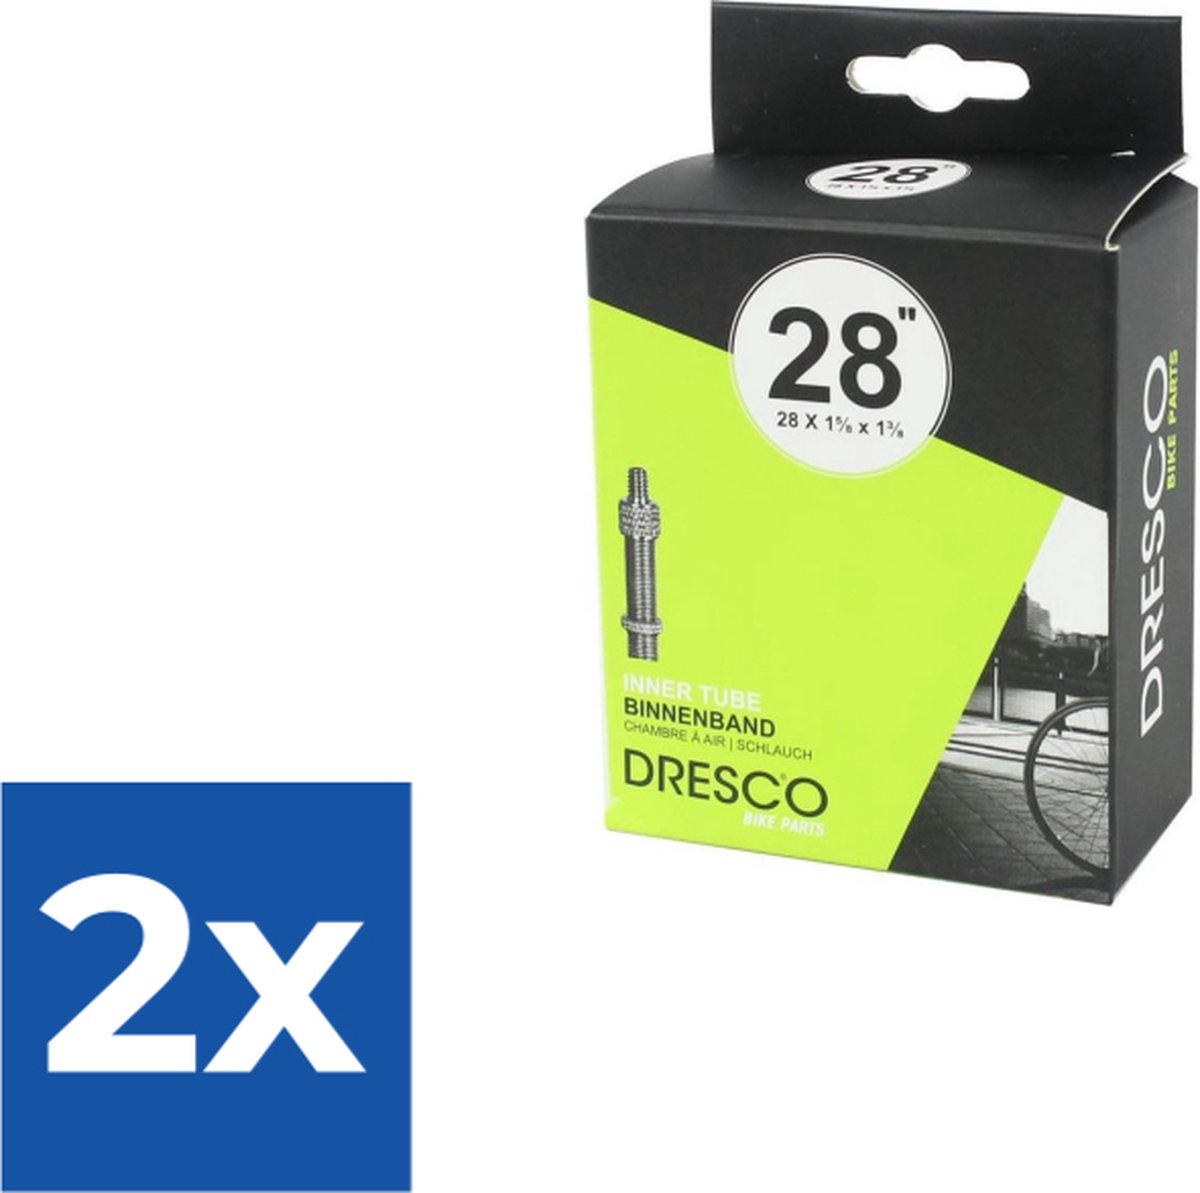 Dresco Binnenband 28 x 1 5/8 x 1 3/8 (37-622) Dunlop 40mm - Voordeelverpakking 2 stuks